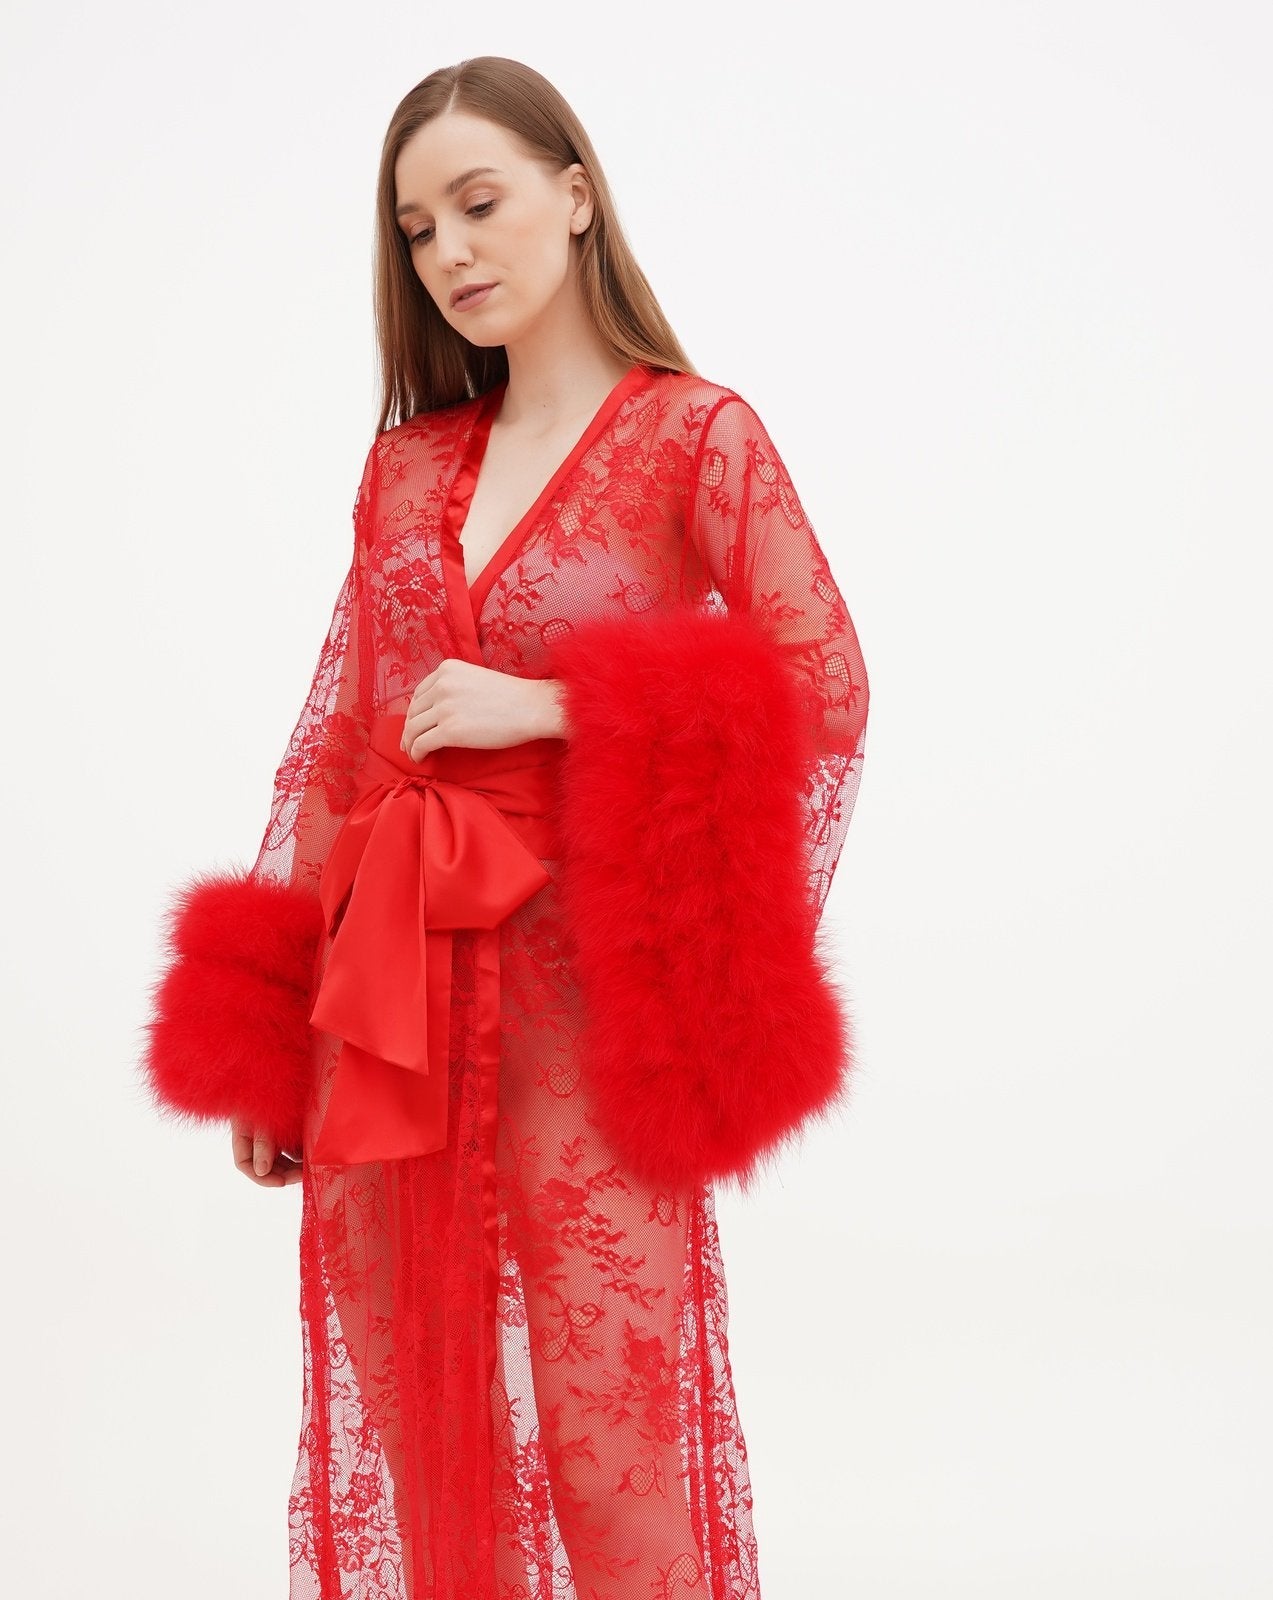 Long Lace Robe - Sheer Matinee Robe